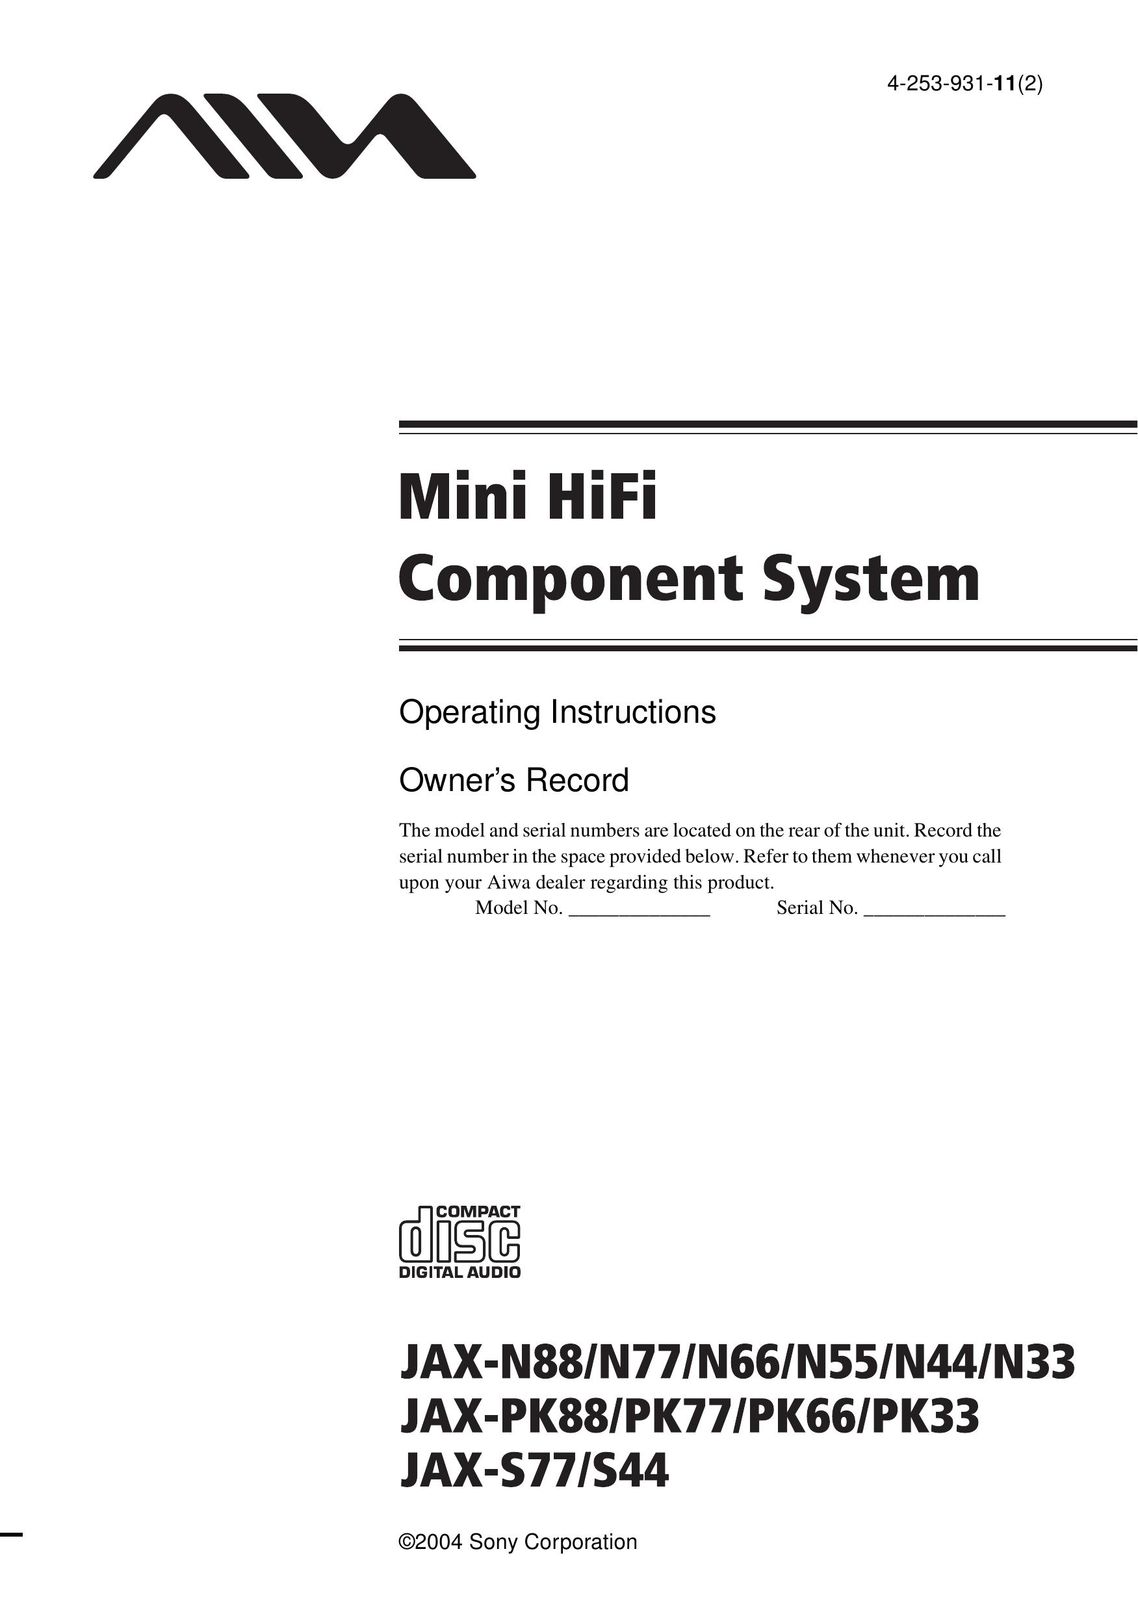 Aiwa JAX-N88 Stereo System User Manual